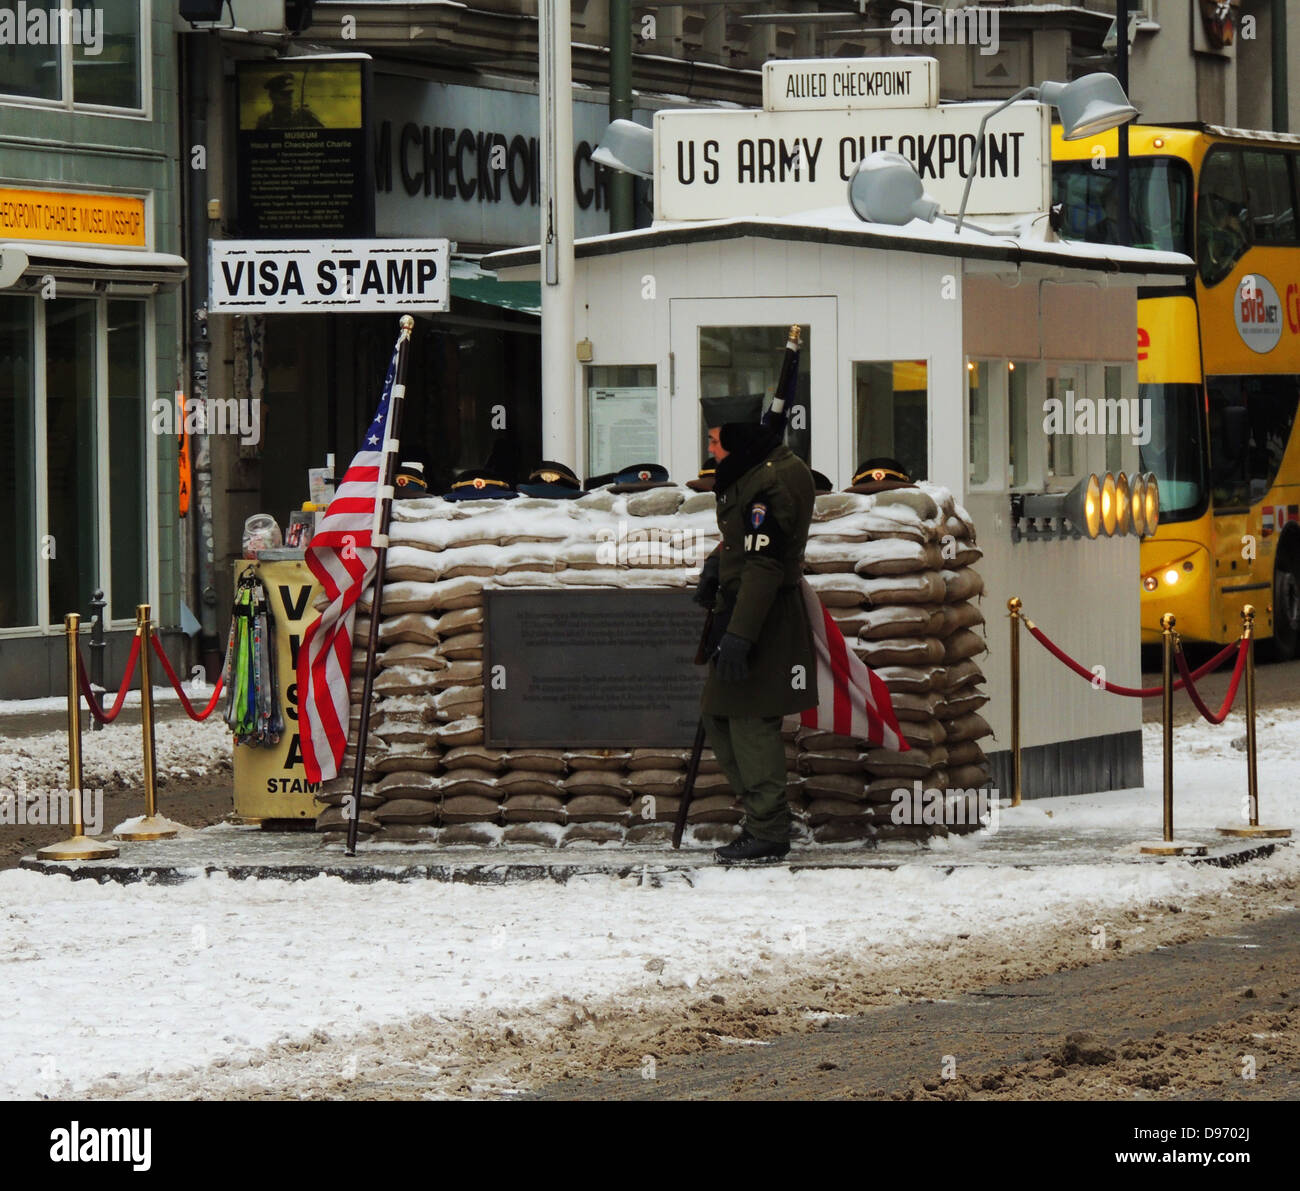 Checkpoint Charlie. Der Checkpoint Charlie war der Name, der von den westlichen Alliierten zu den bekanntesten Berliner Mauer Grenzübergang zwischen Ost und West Berlin während des kalten Krieges. Dieses Bild zeigt die Kreuzung Post nach der Wiedervereinigung. Stockfoto